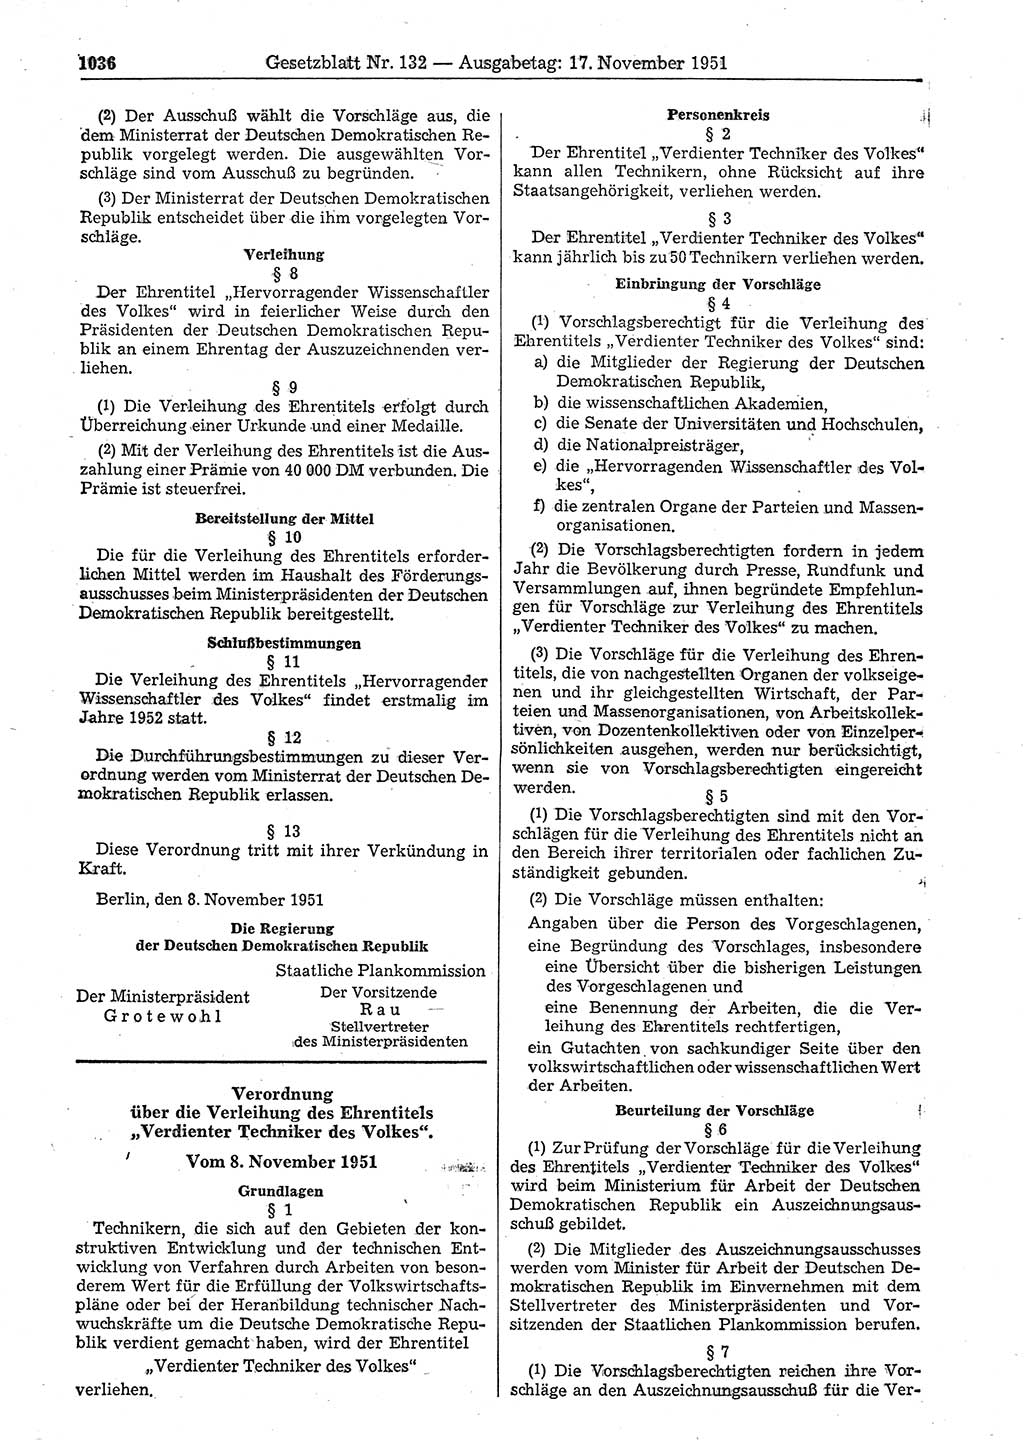 Gesetzblatt (GBl.) der Deutschen Demokratischen Republik (DDR) 1951, Seite 1036 (GBl. DDR 1951, S. 1036)